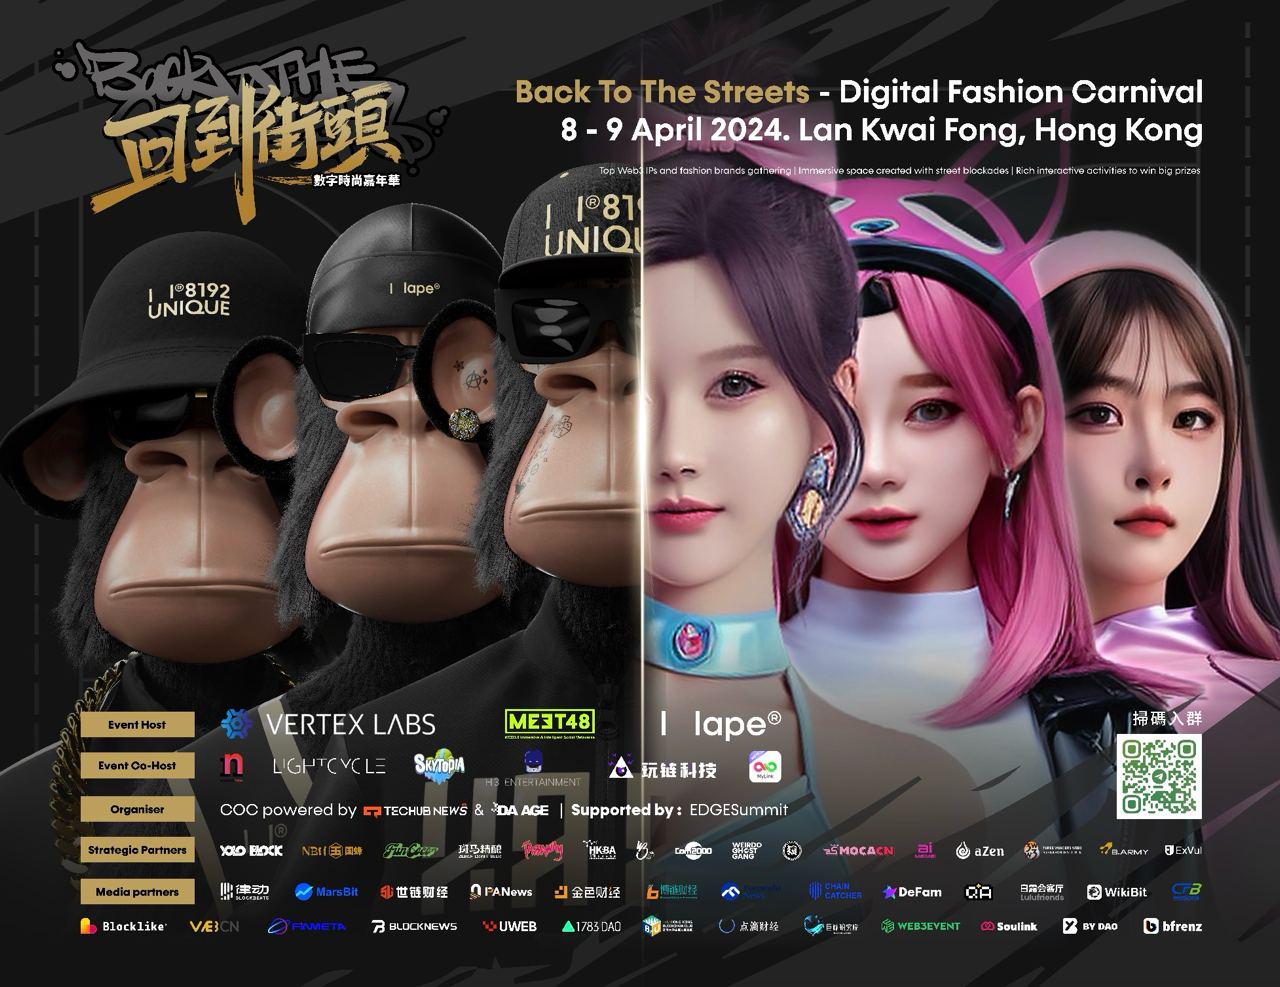 由 AI 與 Web3.0 娛樂領導者－MEET48 主辦的 GIFR (Global Idol Fashion Ranking) 活動於3月25日圓滿落幕